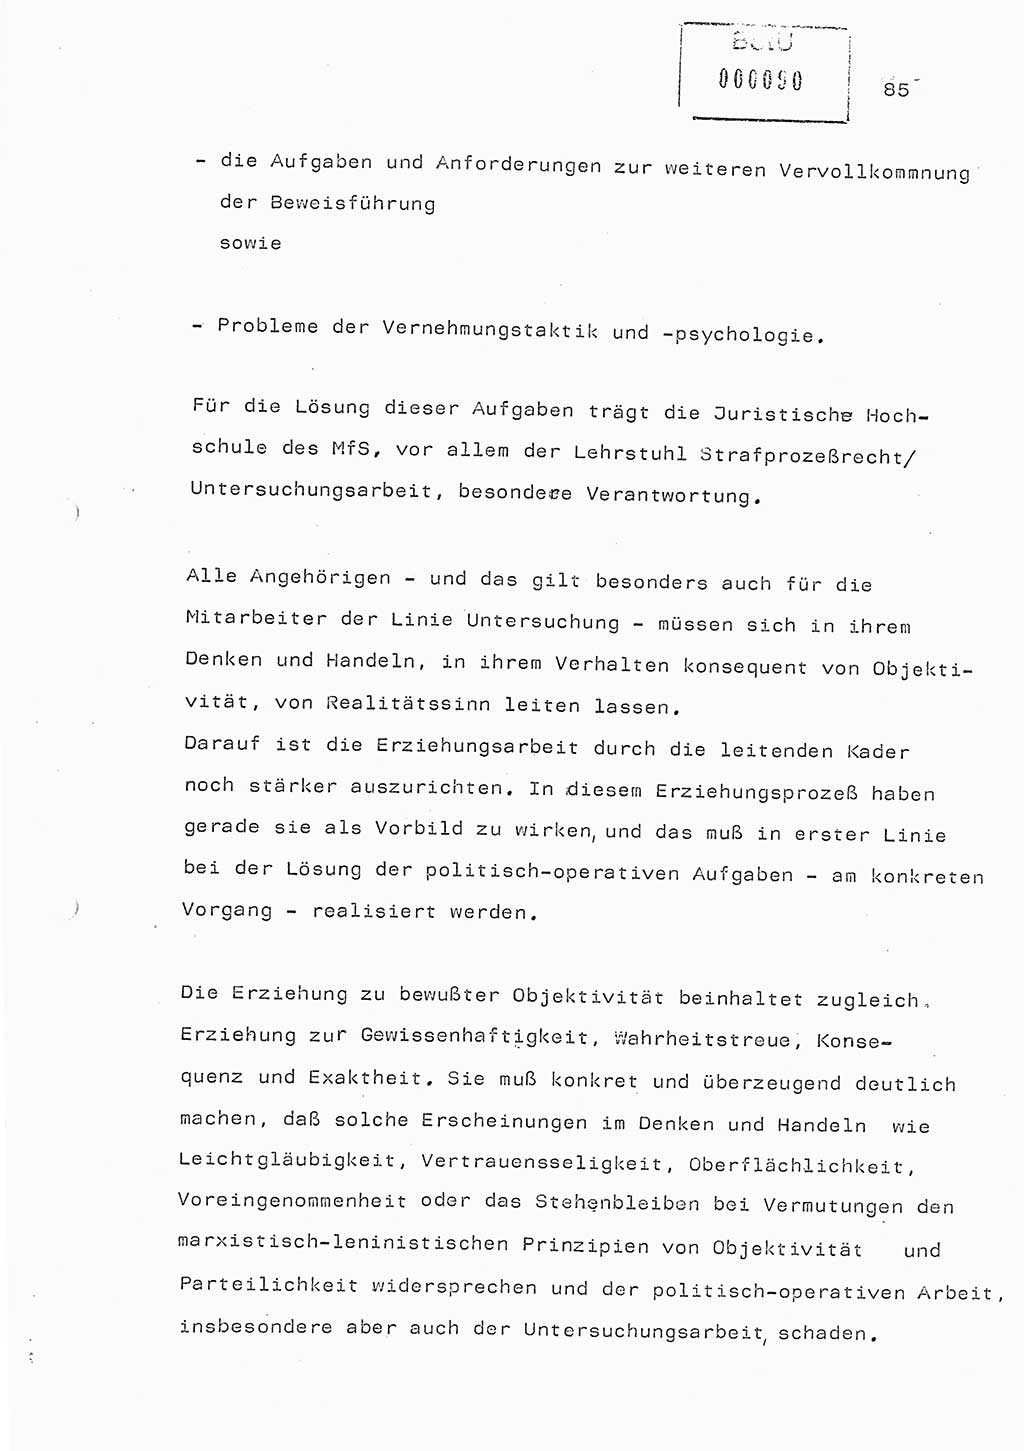 Referat (Generaloberst Erich Mielke) auf der Zentralen Dienstkonferenz am 24.5.1979 [Ministerium für Staatssicherheit (MfS), Deutsche Demokratische Republik (DDR), Der Minister], Berlin 1979, Seite 85 (Ref. DK DDR MfS Min. /79 1979, S. 85)